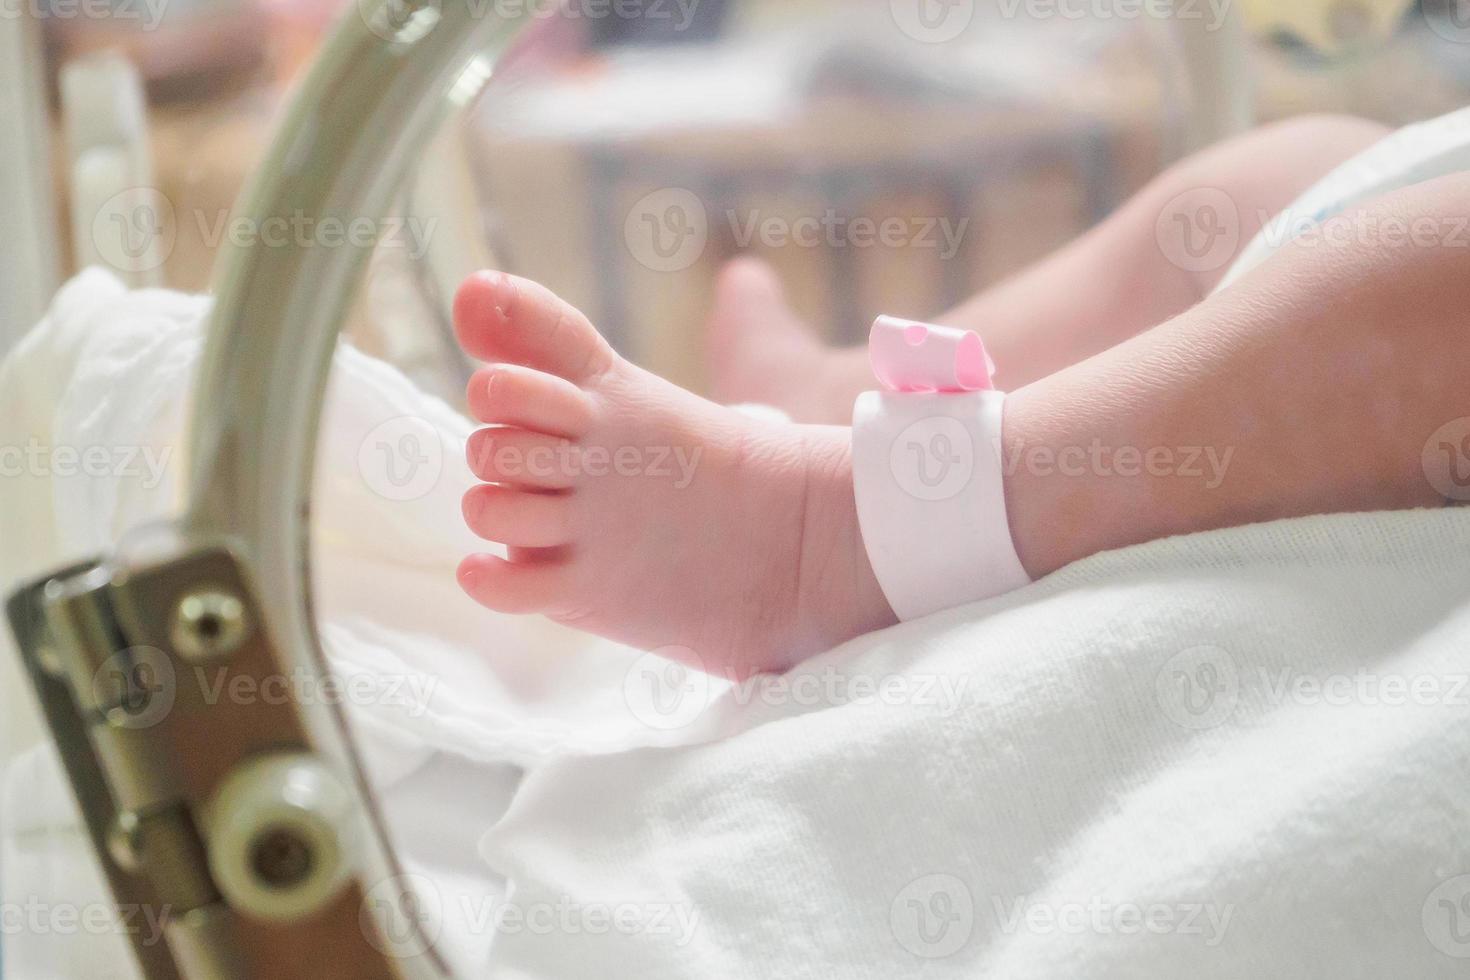 nyfödd flicka bebis inuti inkubator i sjukhus med Identifiering armband märka namn foto